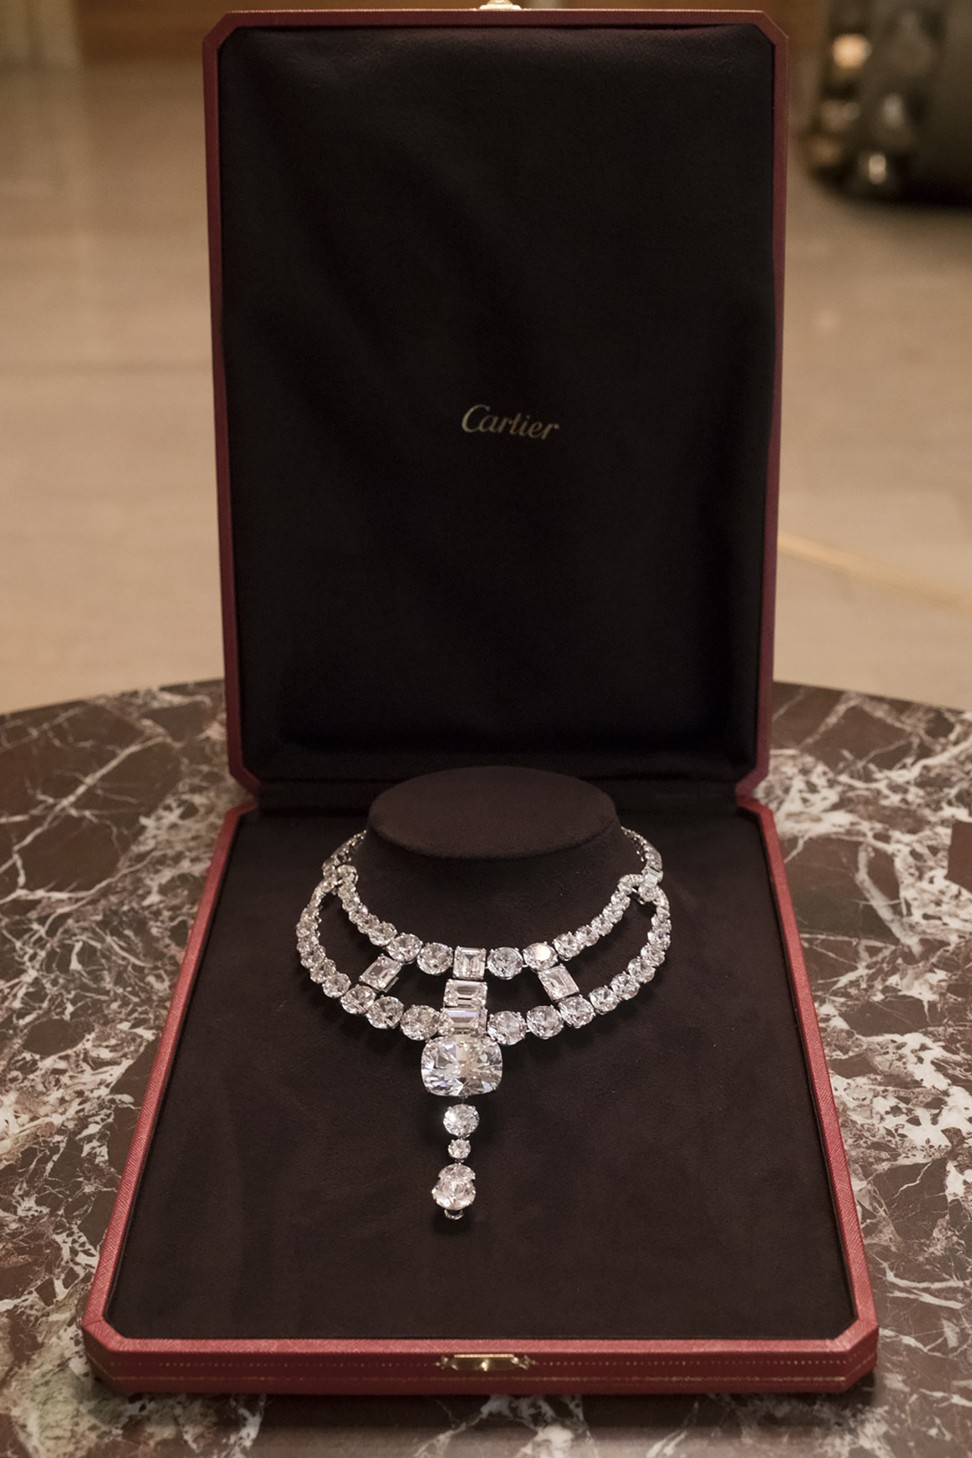 Cartier re-creates a dazzling diamond 